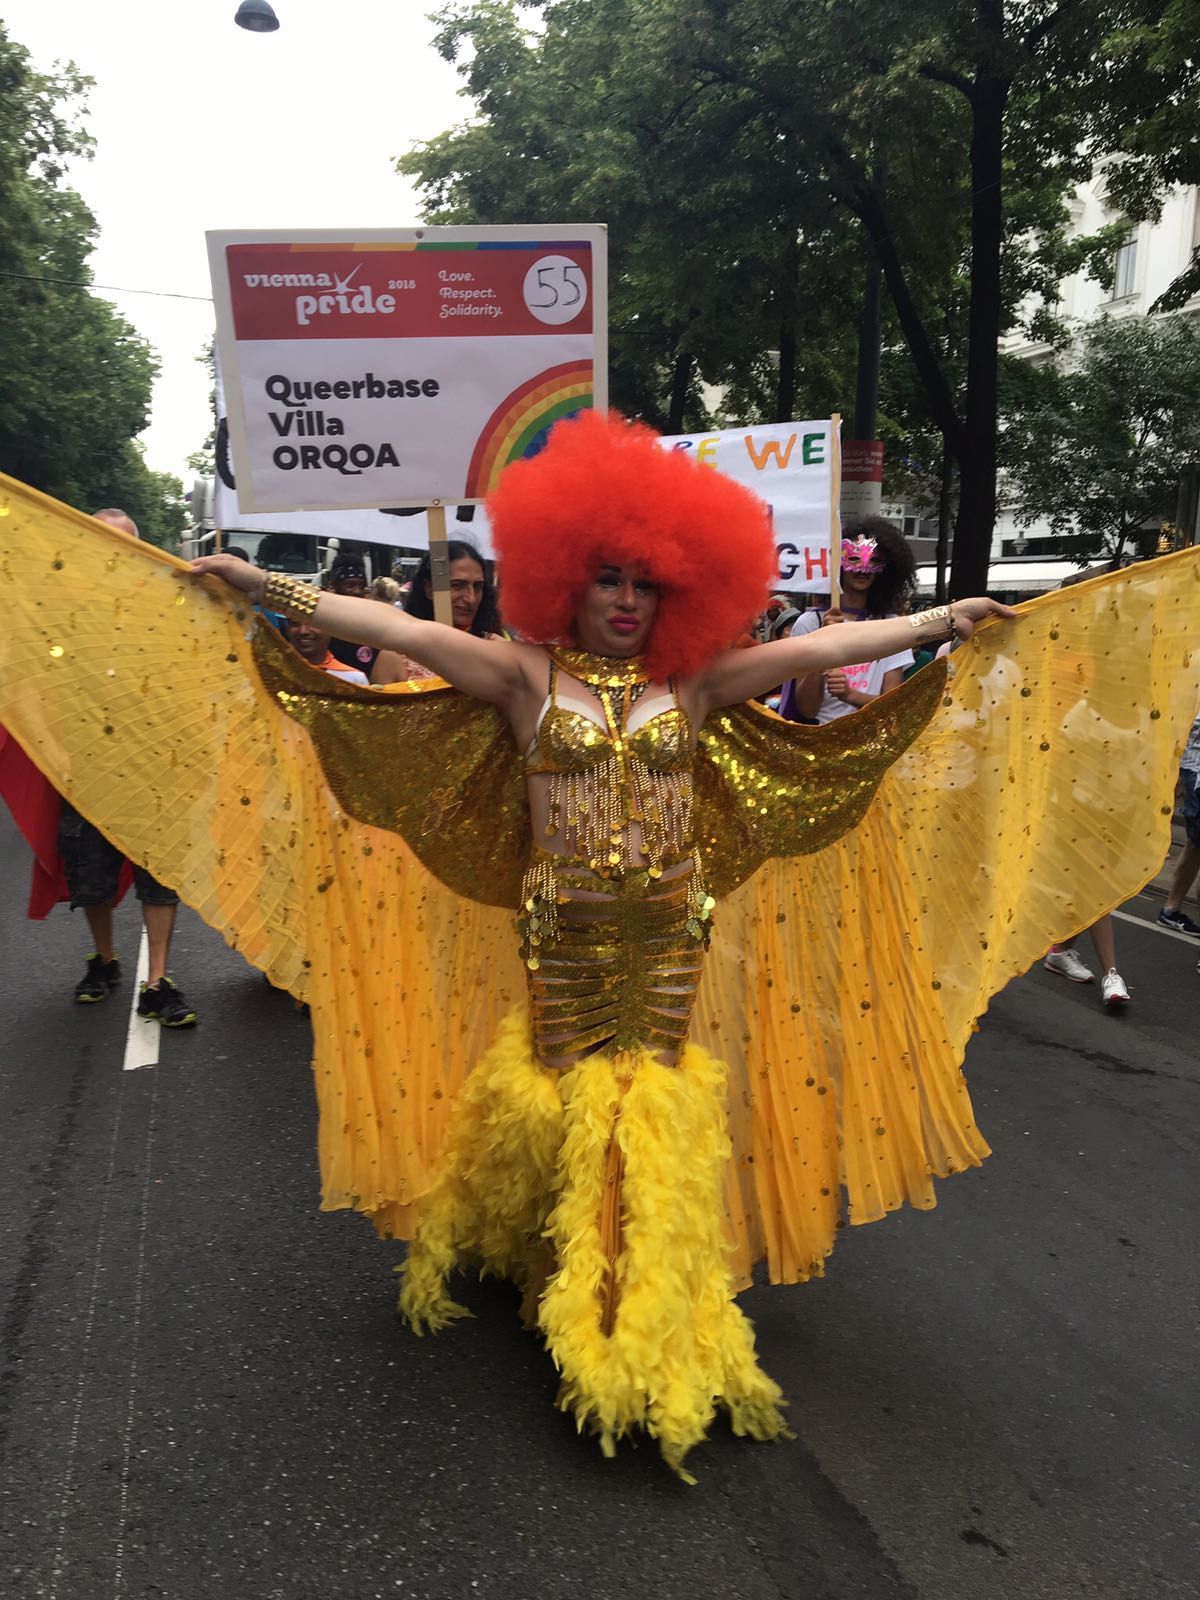 Viena celebra su Orgullo como un ensayo general del EuroPride 2019